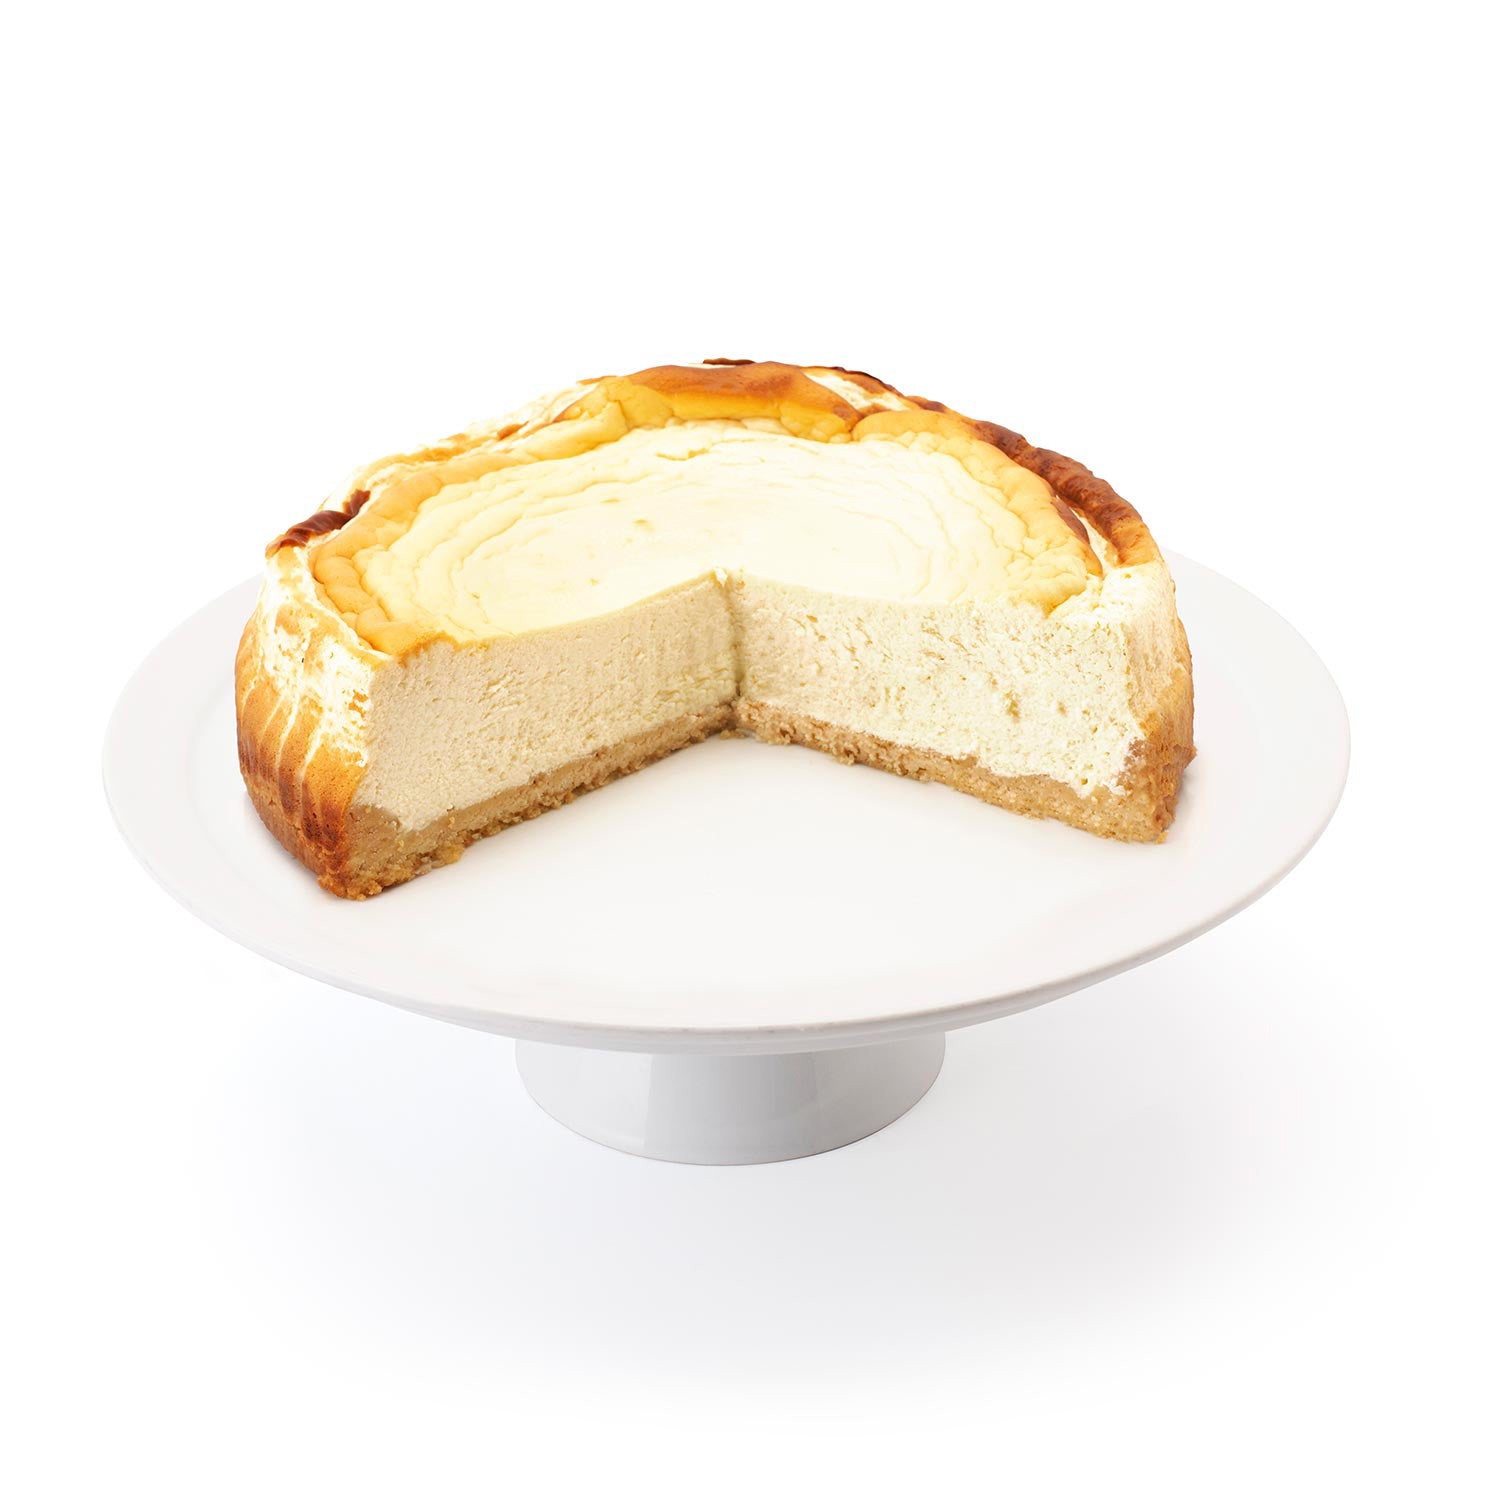 cakes-Topfentorte-Cheesecake-7B-web_75cca5d1-e4cc-47d0-9b7e-55e6e2da766c.jpg